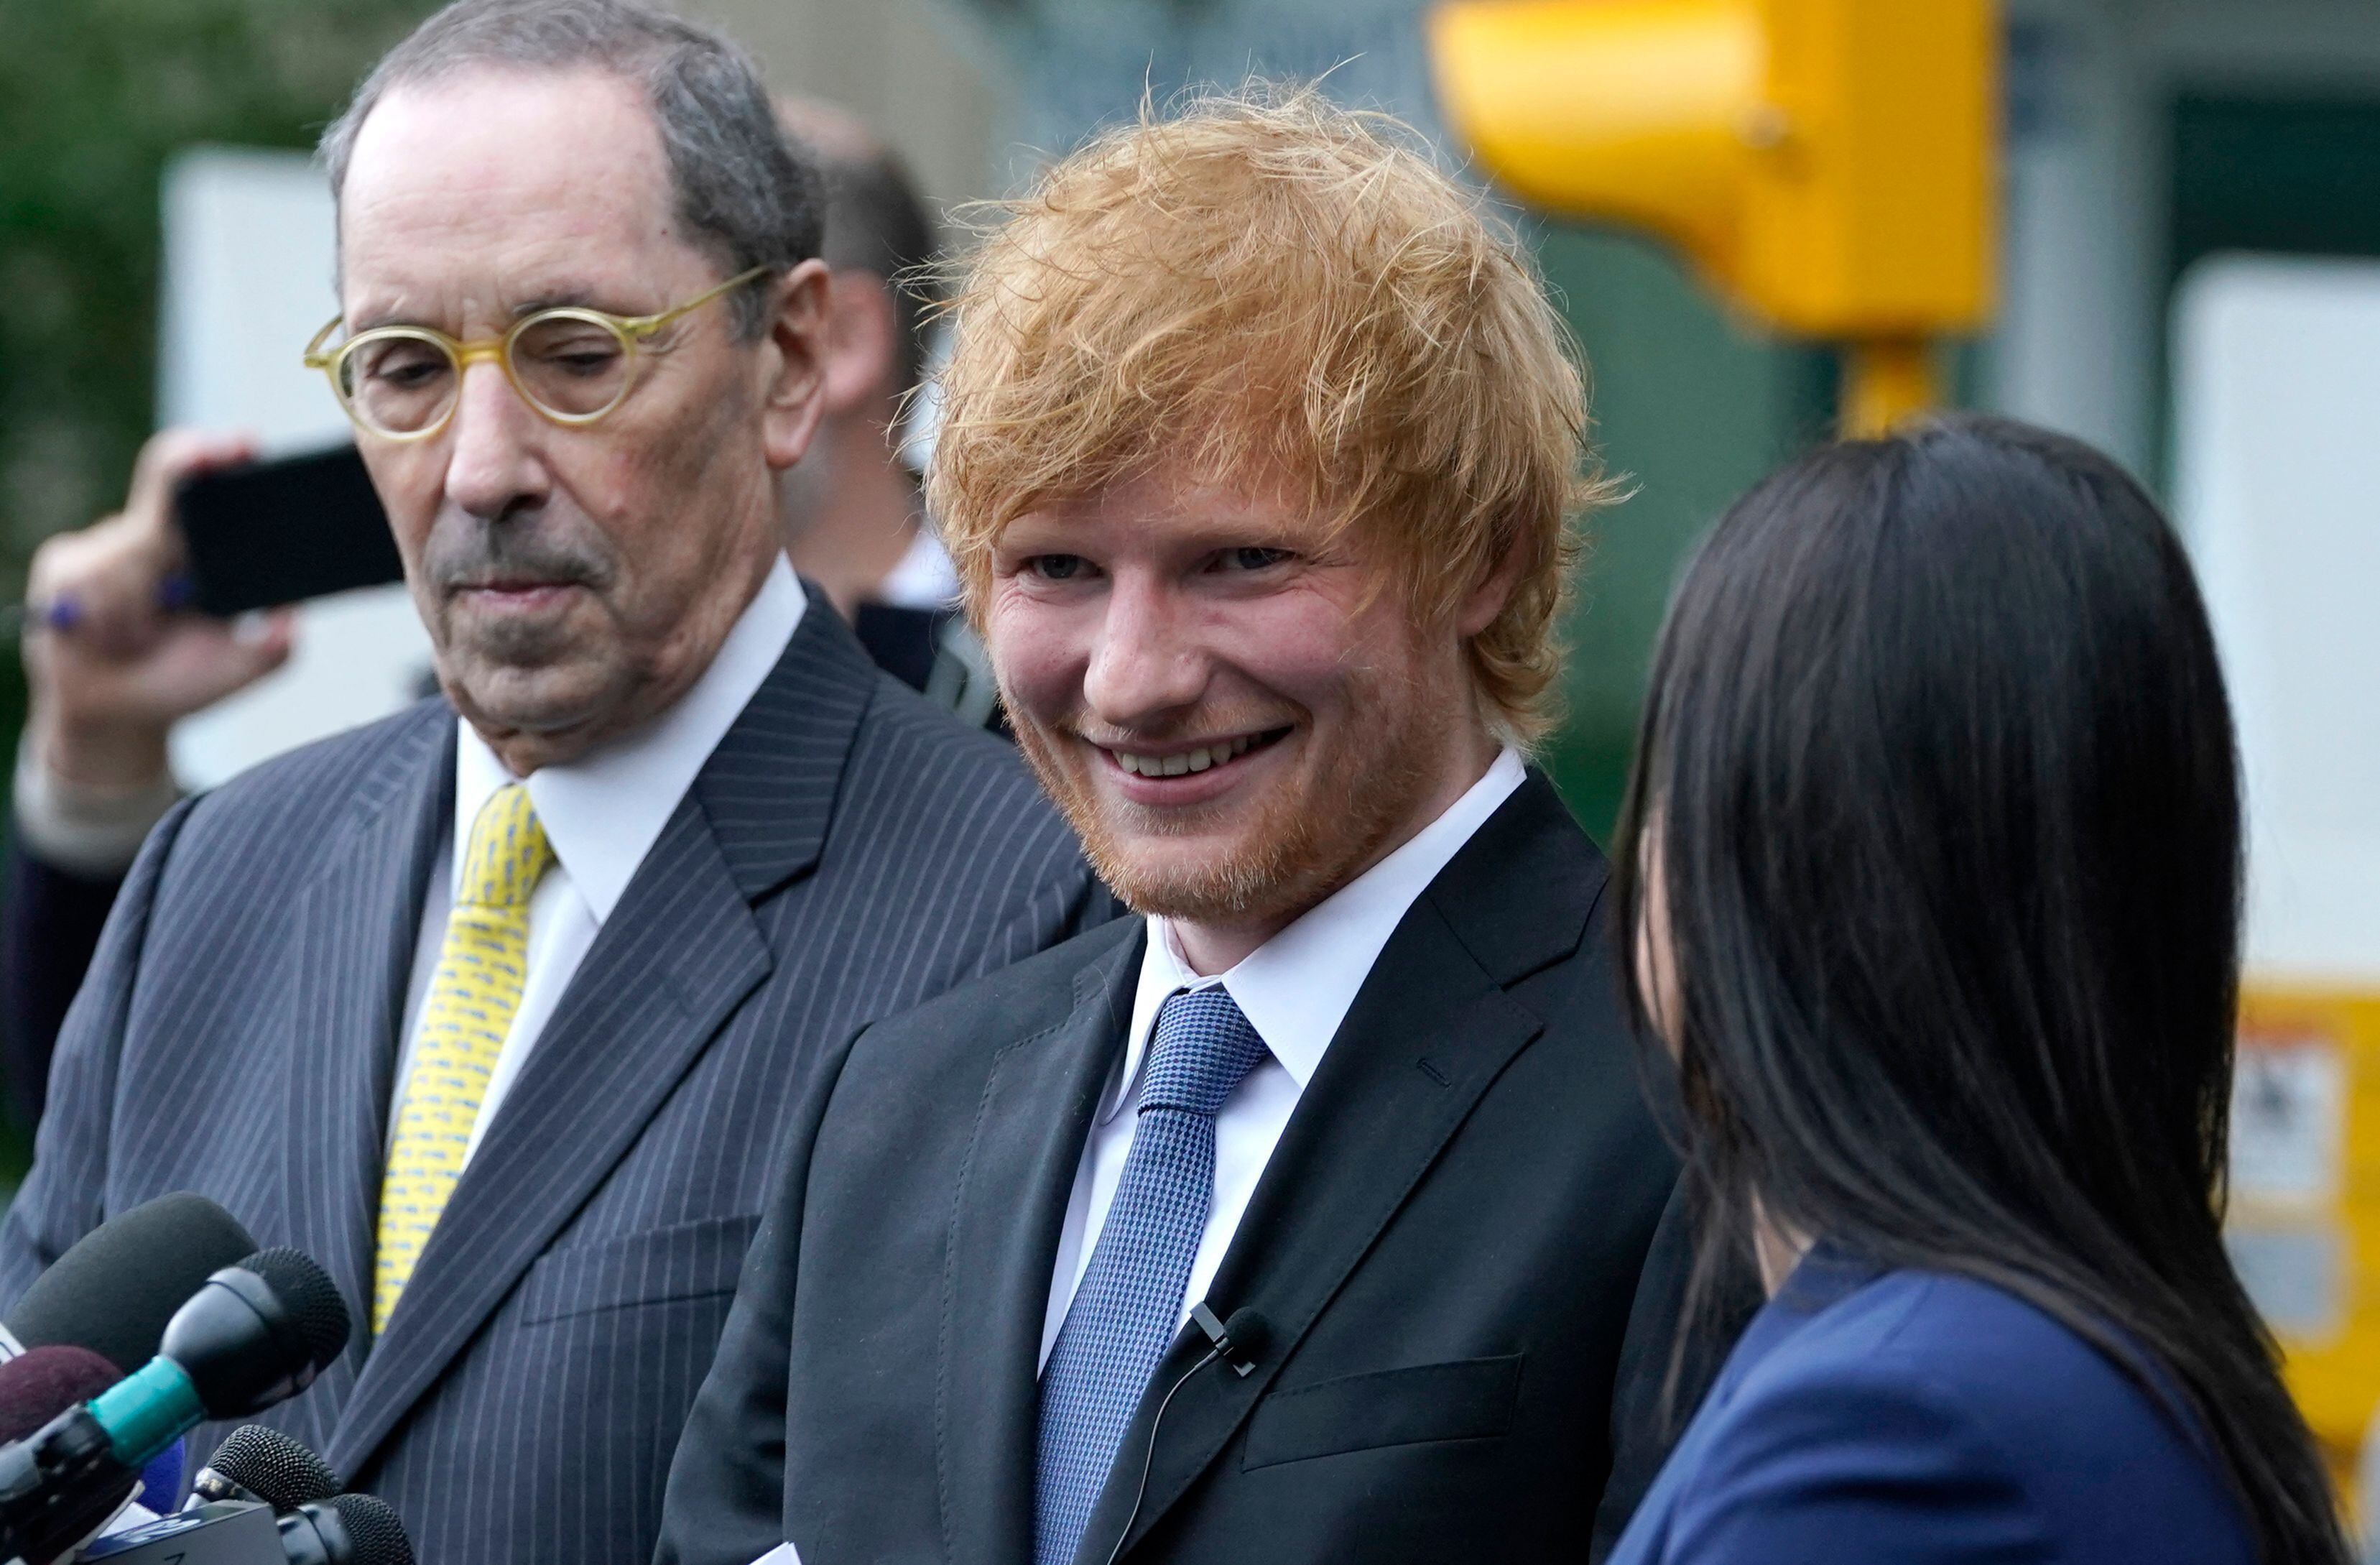 El cantautor británico Ed Sheeran se mostró muy feliz luego del fallo a su favor en el juicio por plagio.